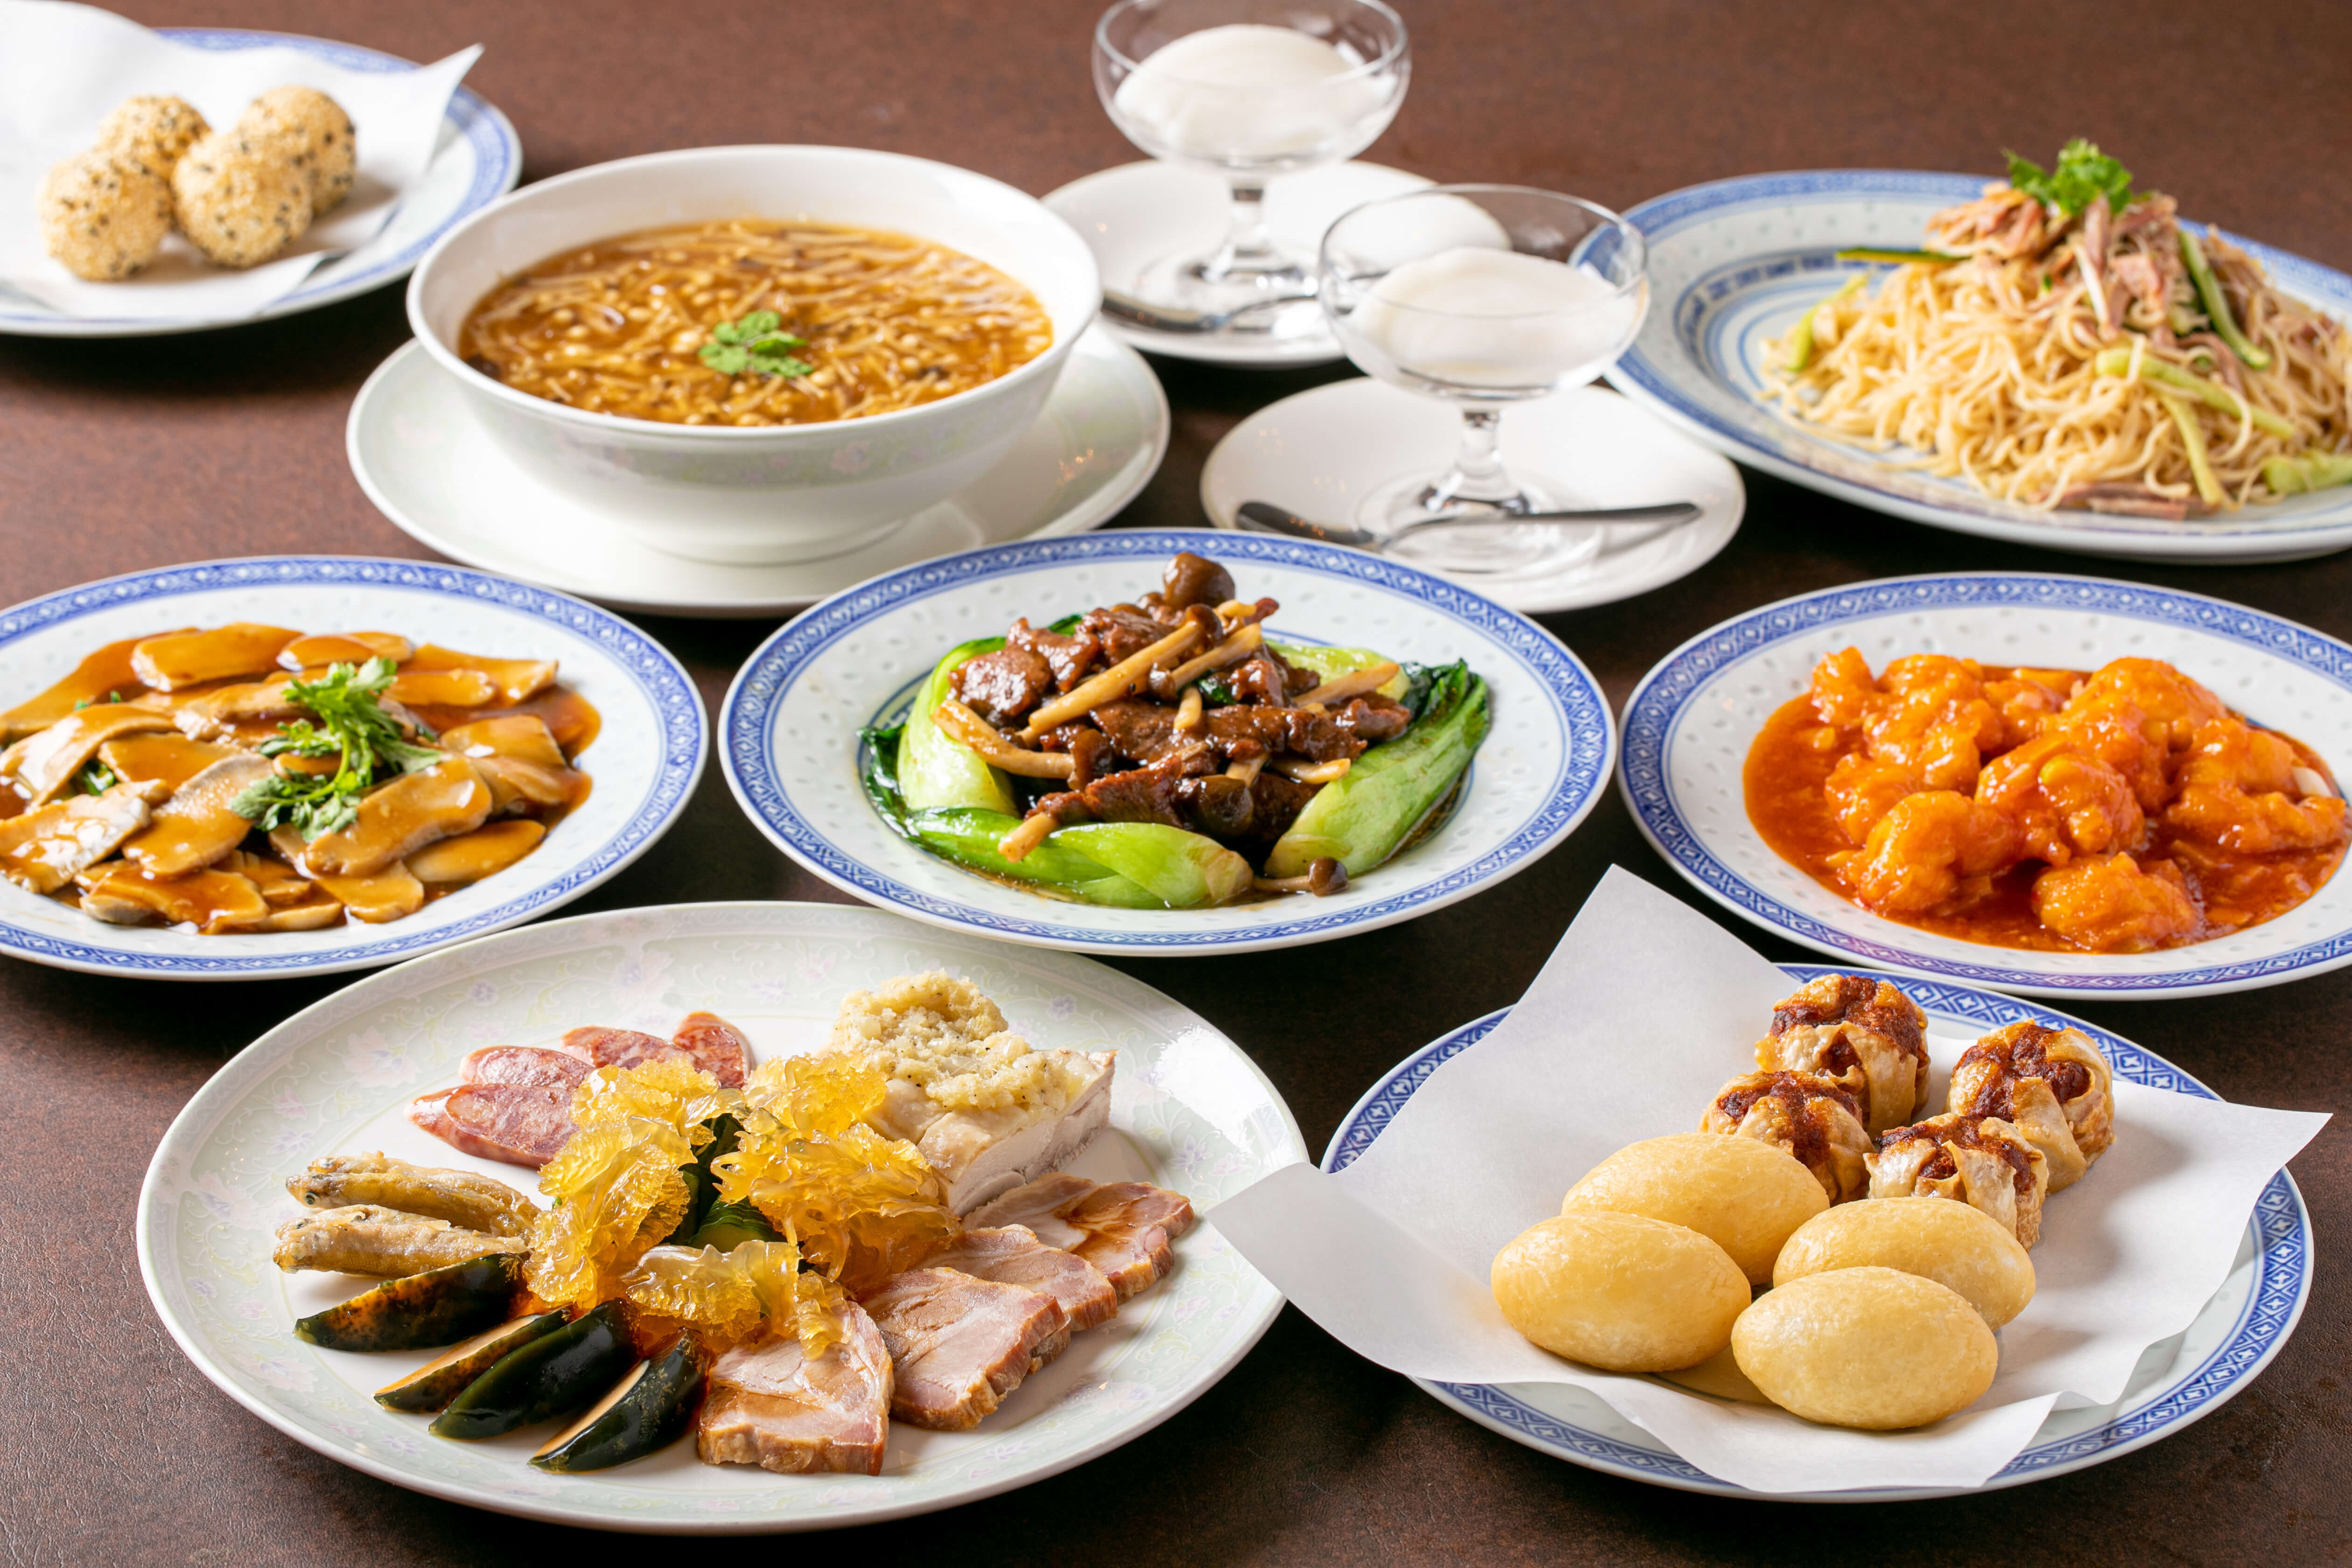 神戸市・元町駅周辺の「中華菜館 龍郷」さんのクチコミレポート。広東料理、飲茶・点心が観光の際のランチ・ディナーで人気